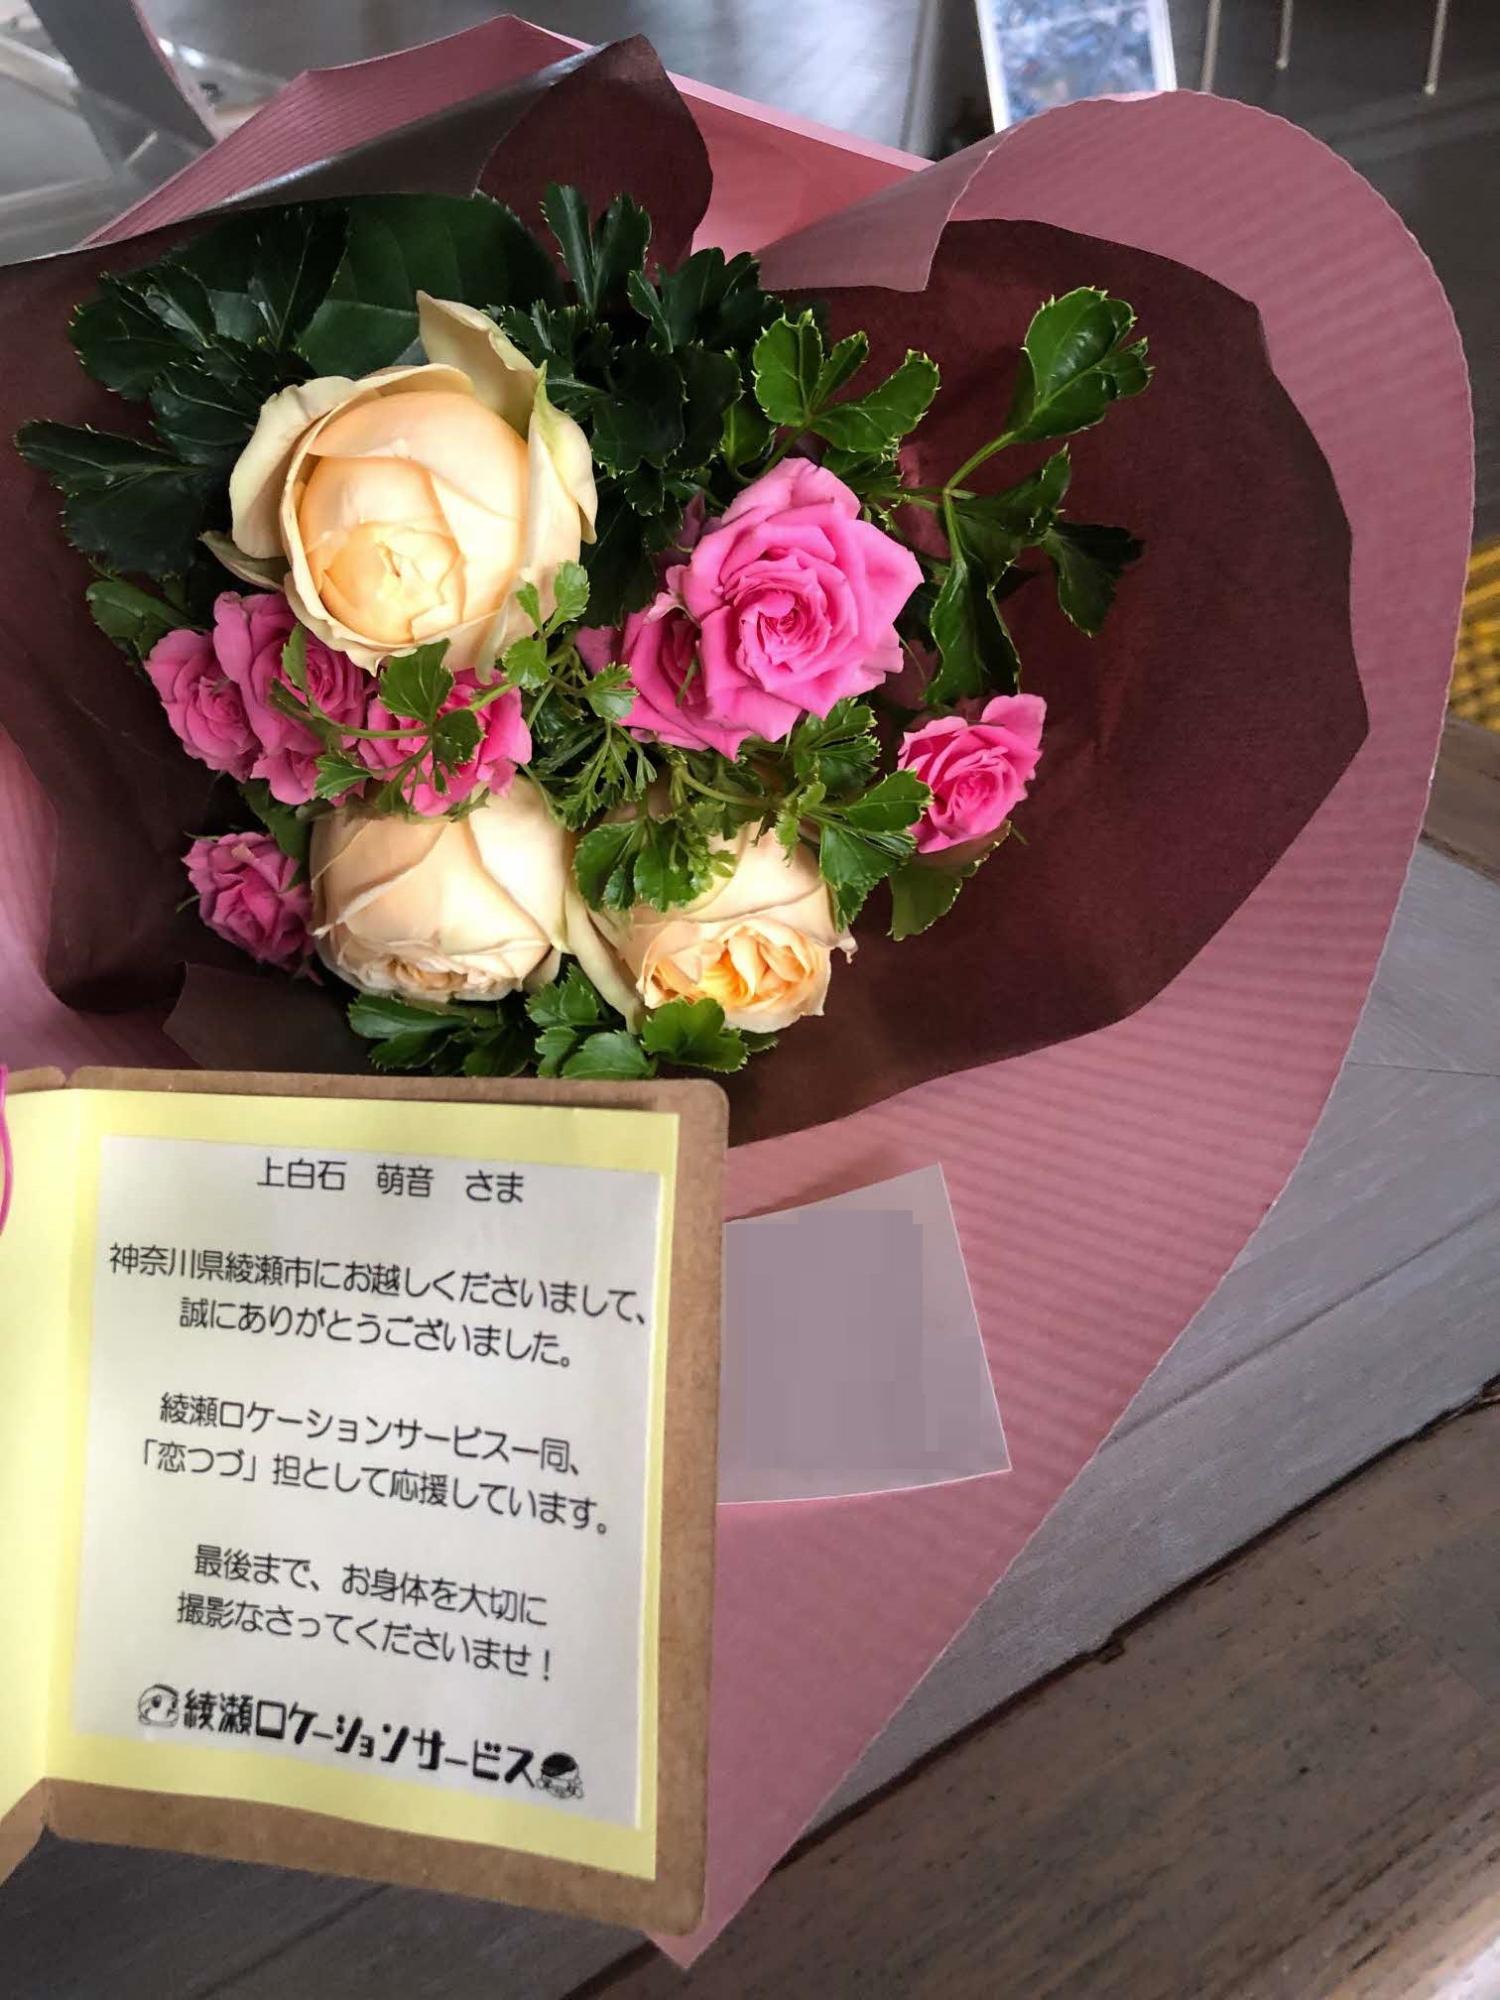 メッセージカードが付いたピンクと白のバラのブーケの写真